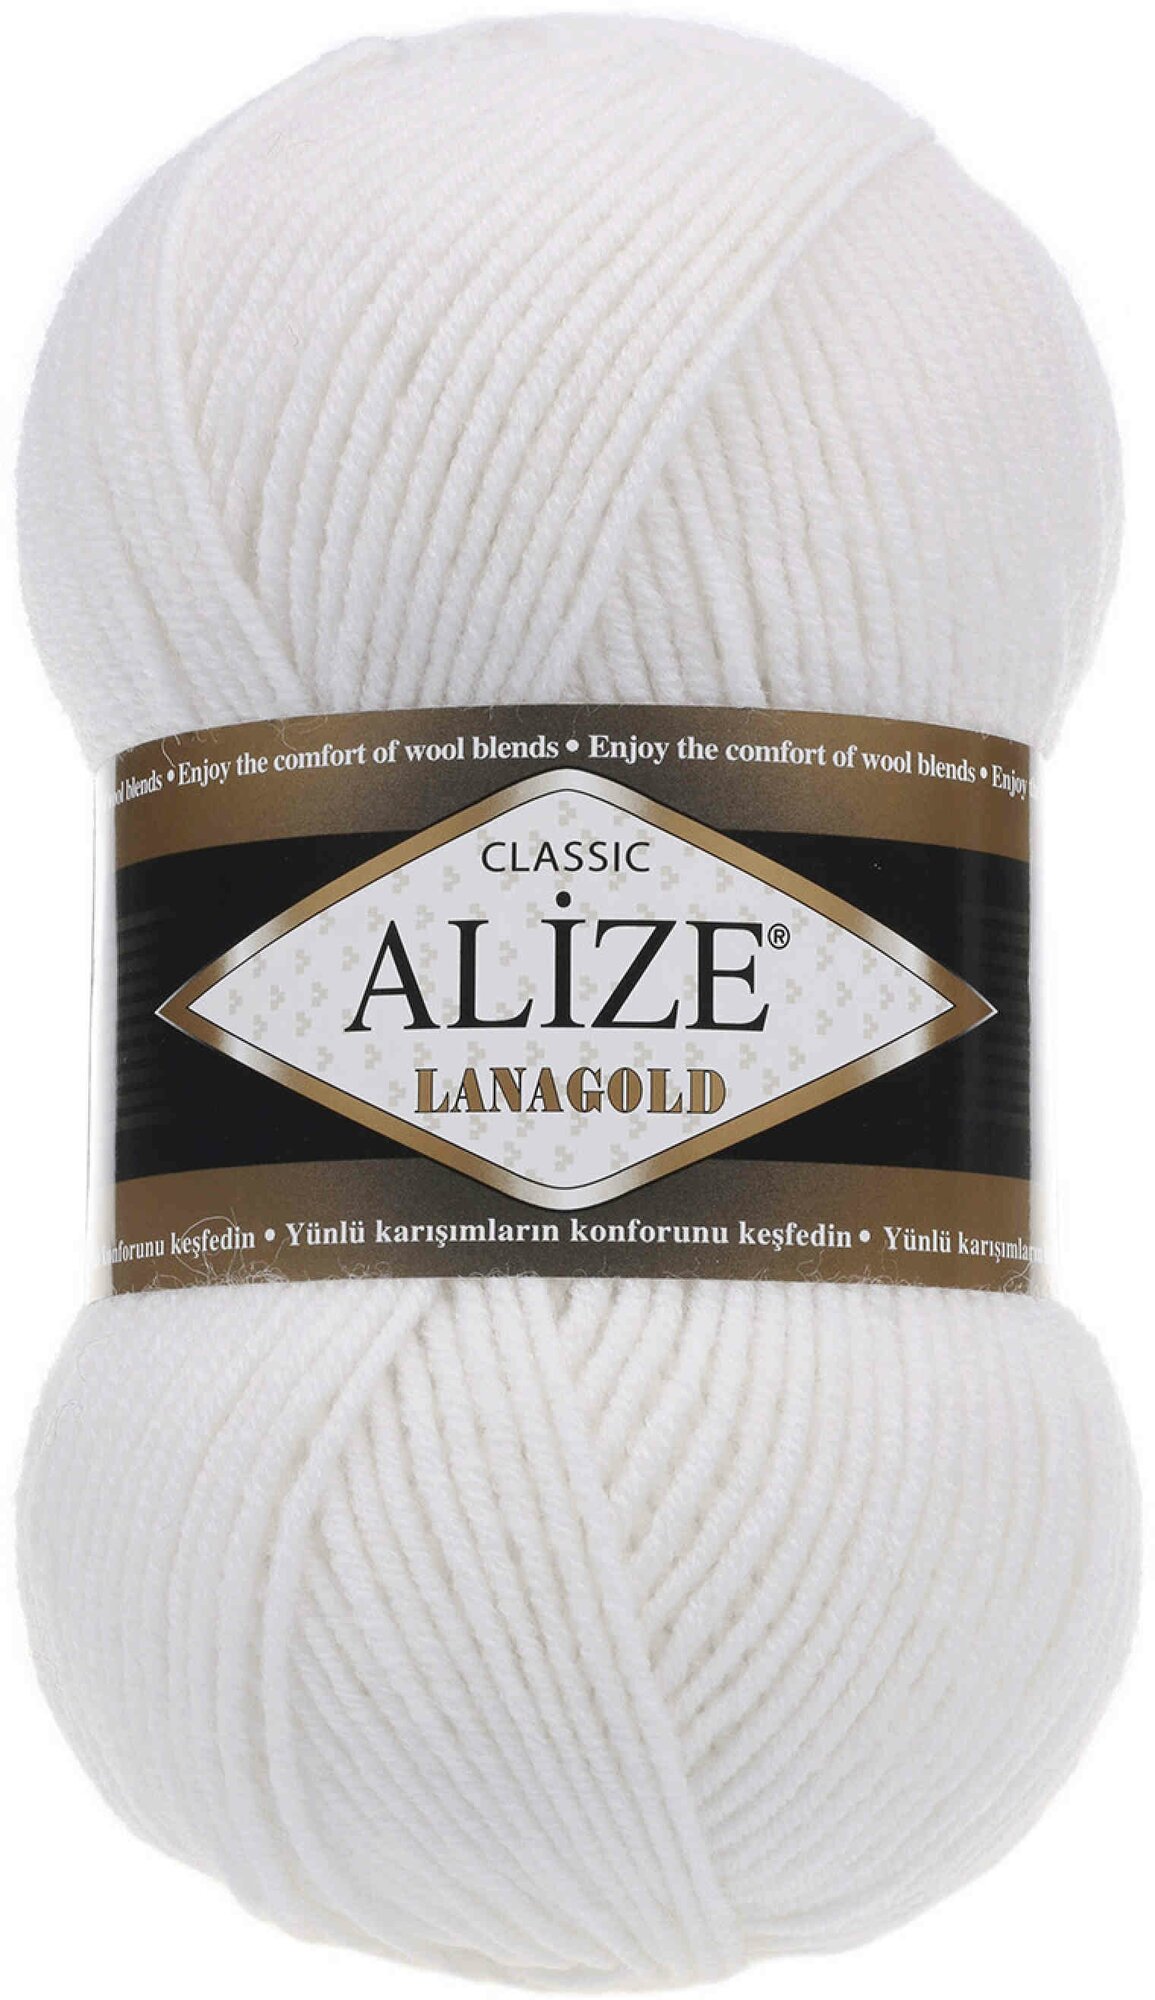 Пряжа Alize Lanagold белый (55), 51%акрил/49%шерсть, 240м, 100г, 3шт